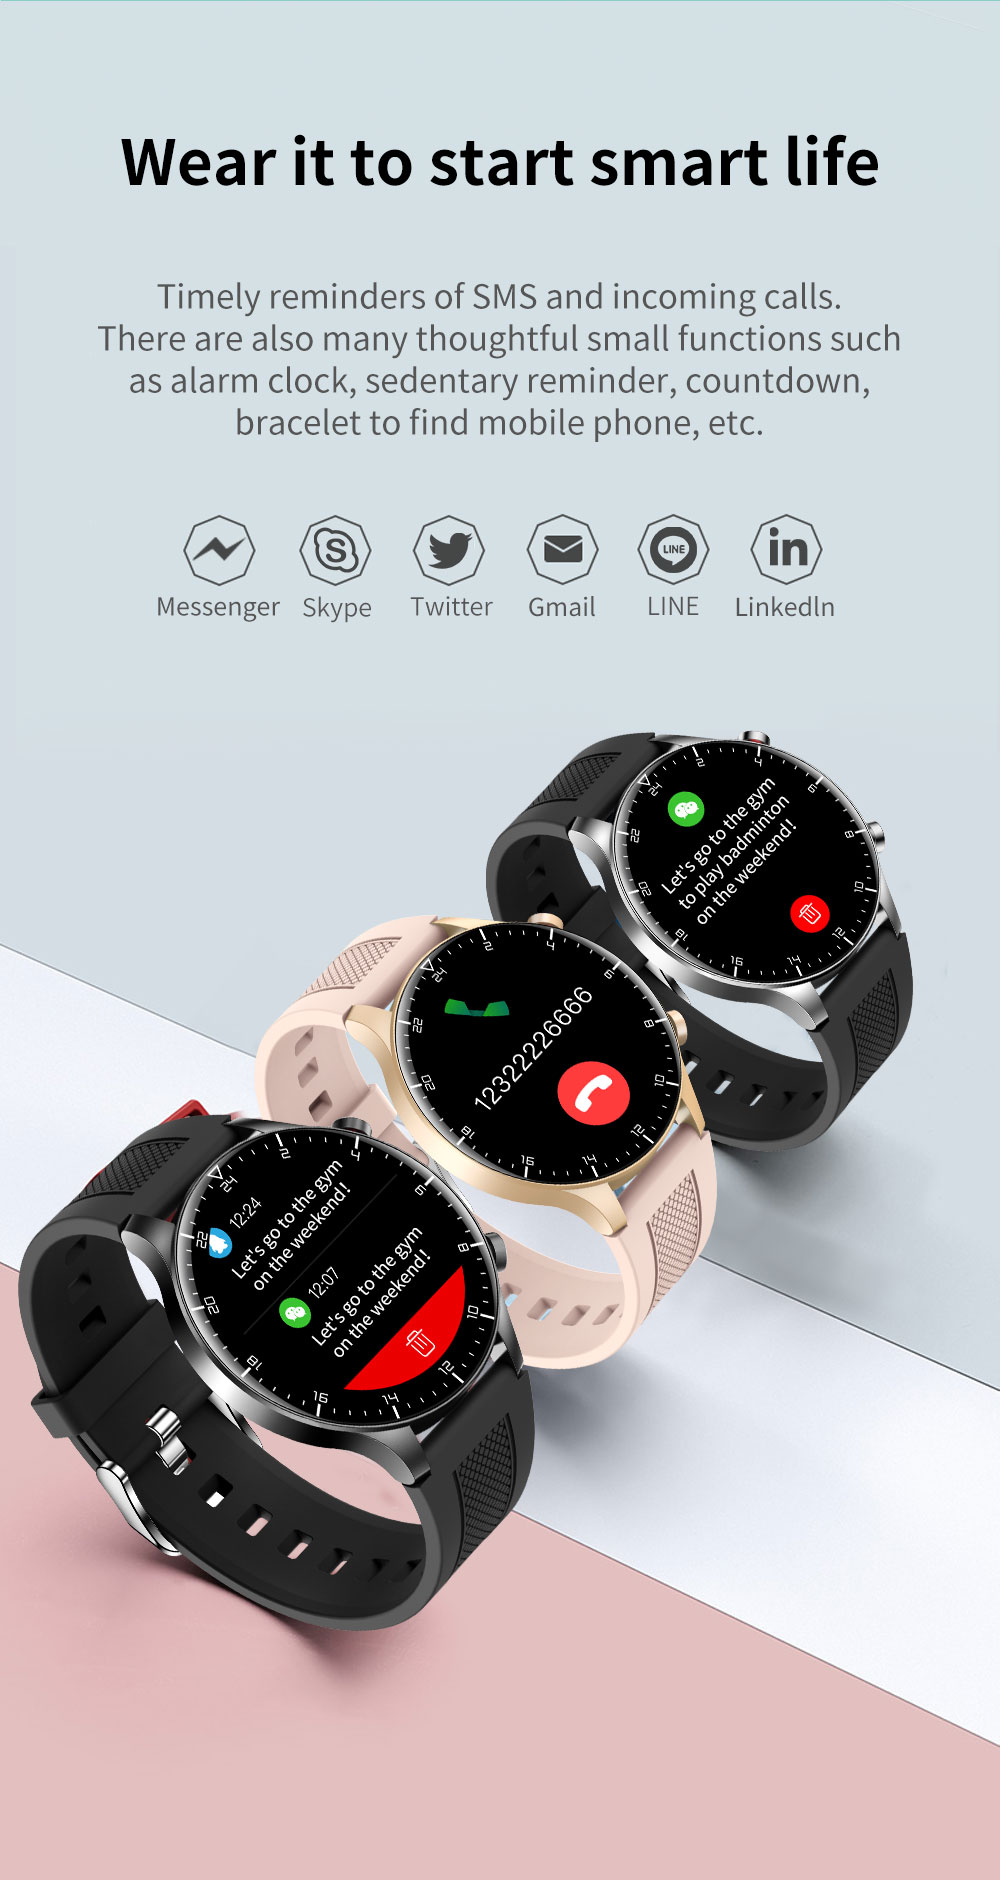 KUMI GW16T Pro Smartwatch 1.3'' Touch Screen Multiple Sports Modes Heart Health SpO2 Measurement IP68 Waterproof - Black